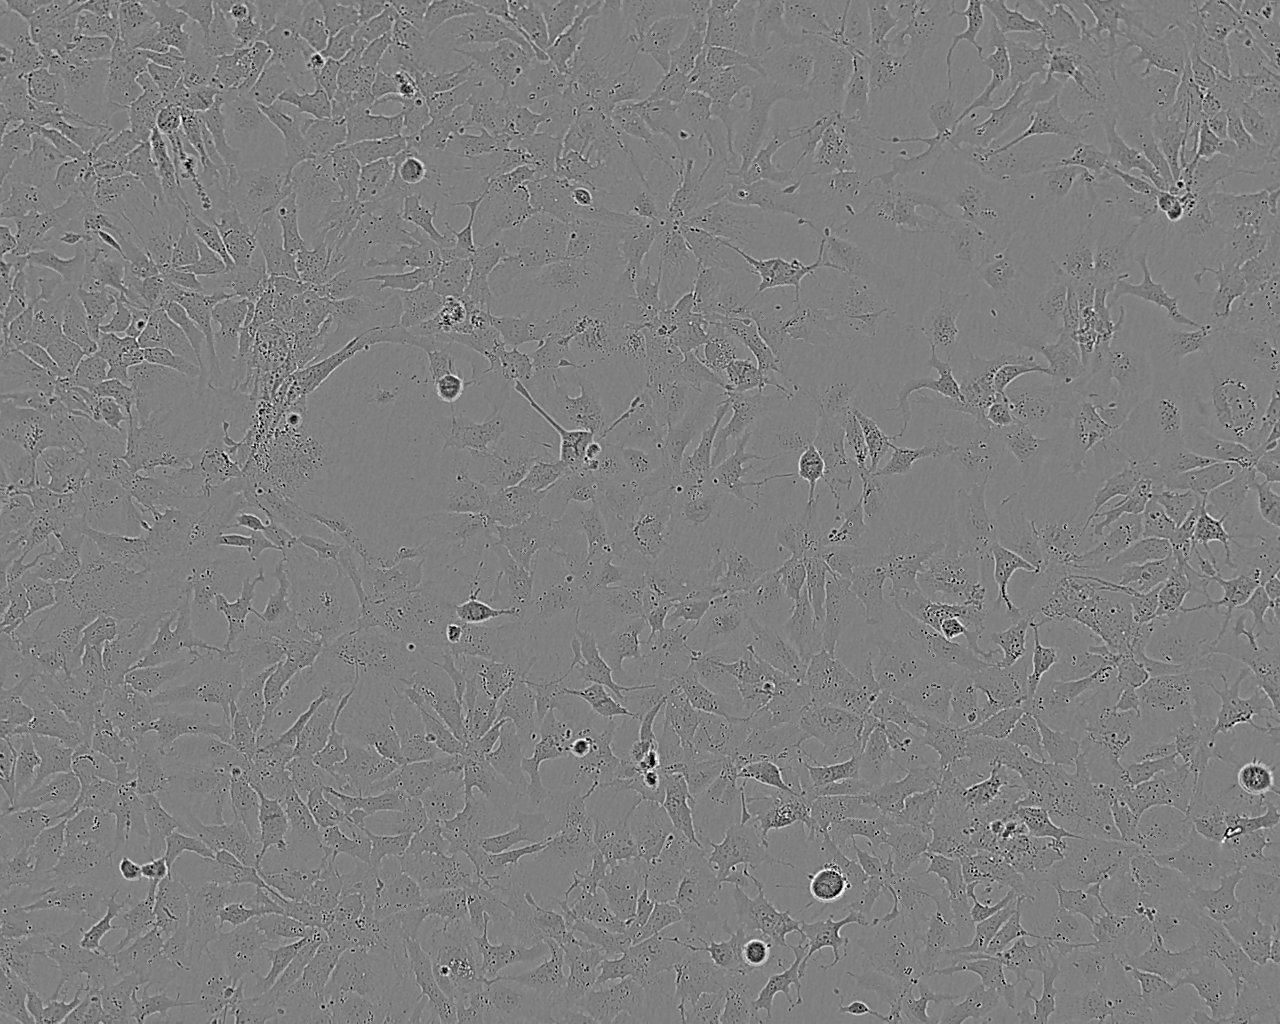 NCI-H187 Cells|人视网膜母细胞瘤克隆细胞,NCI-H187 Cells